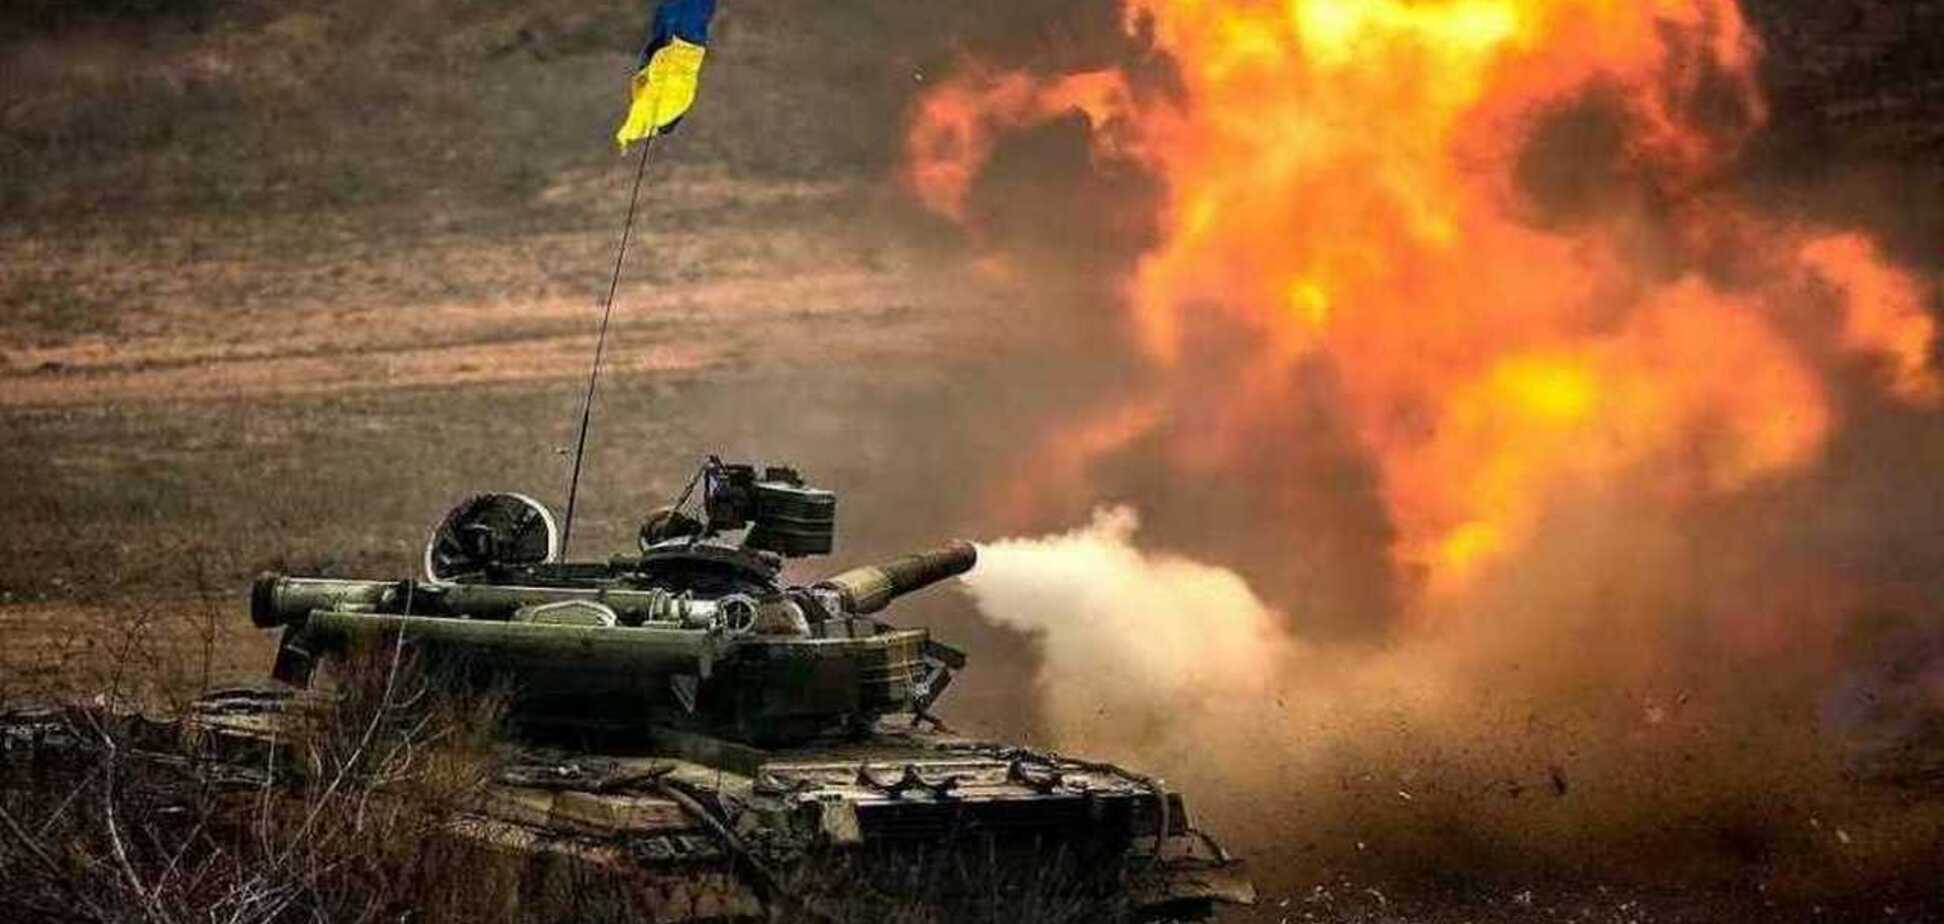 Ще два-три роки: Селезньов спрогнозував наступ на Україну